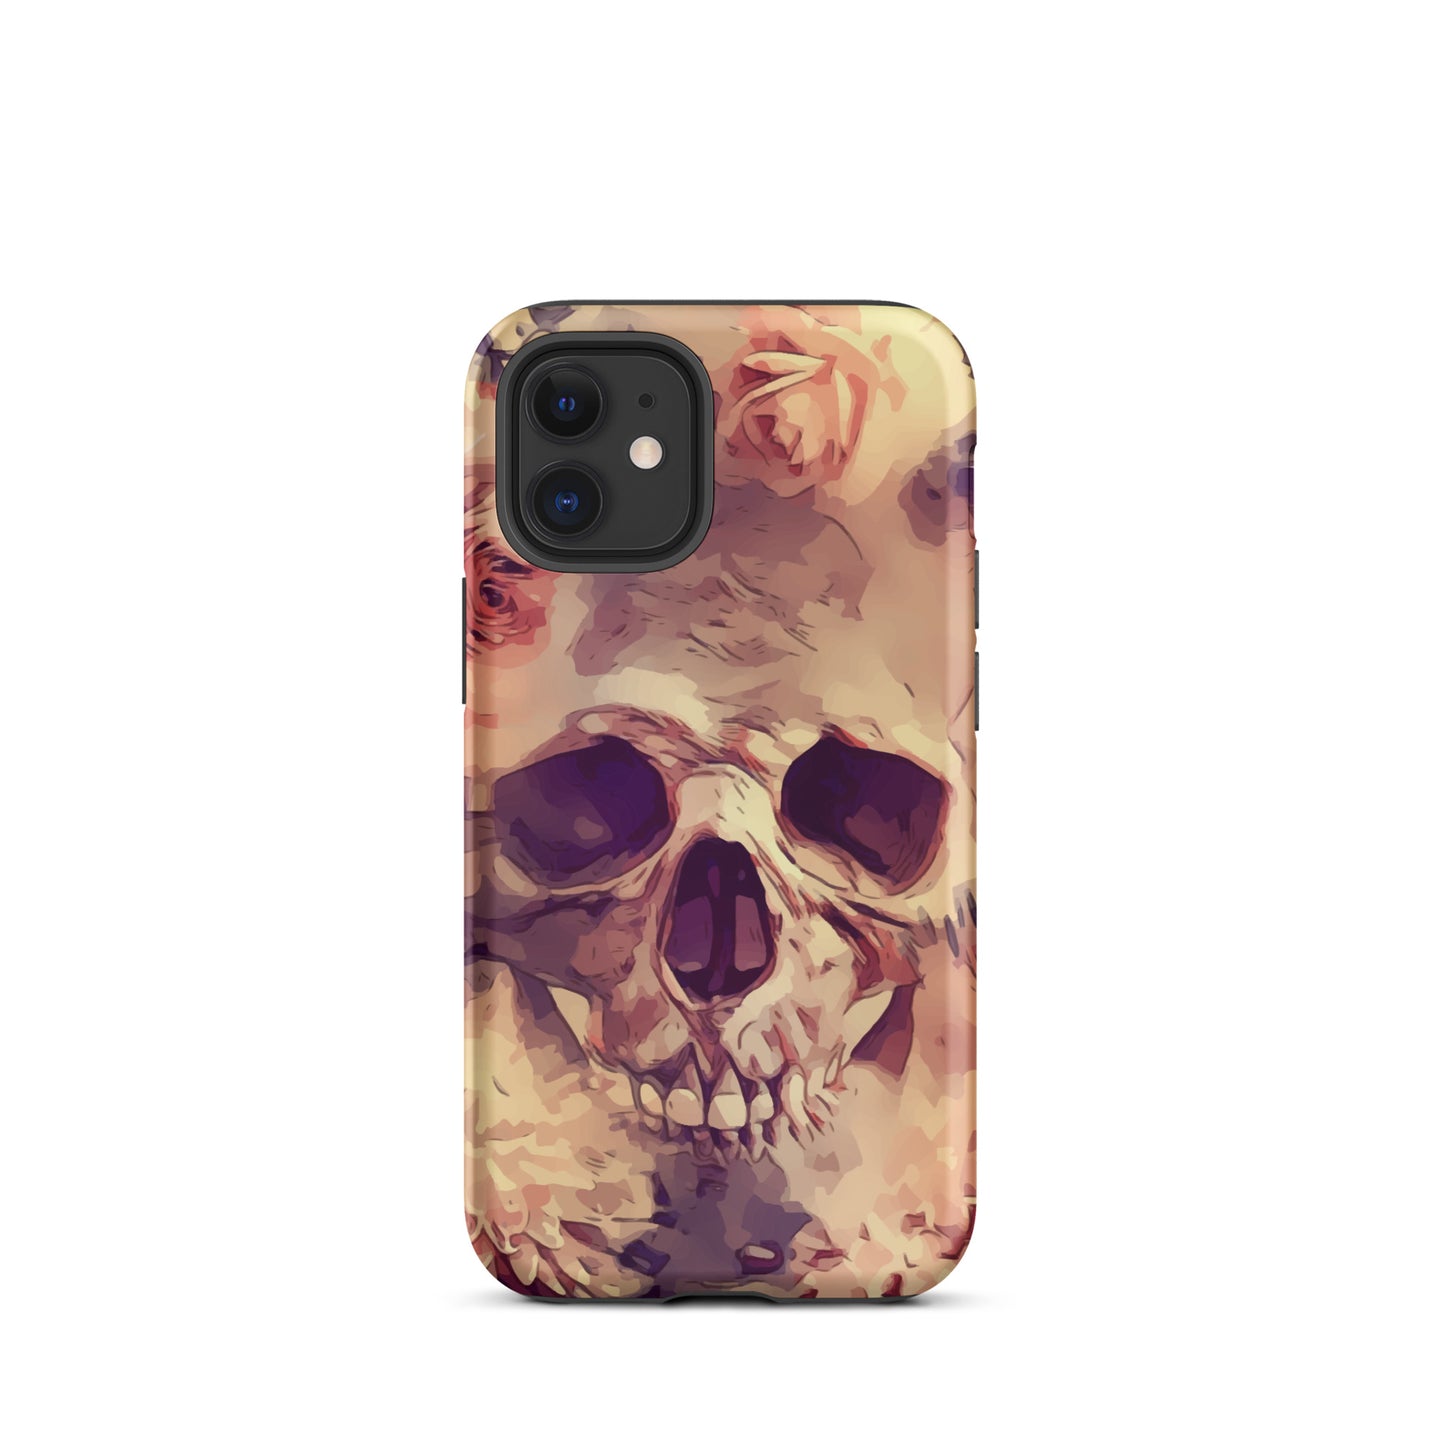 Skull iPhone case